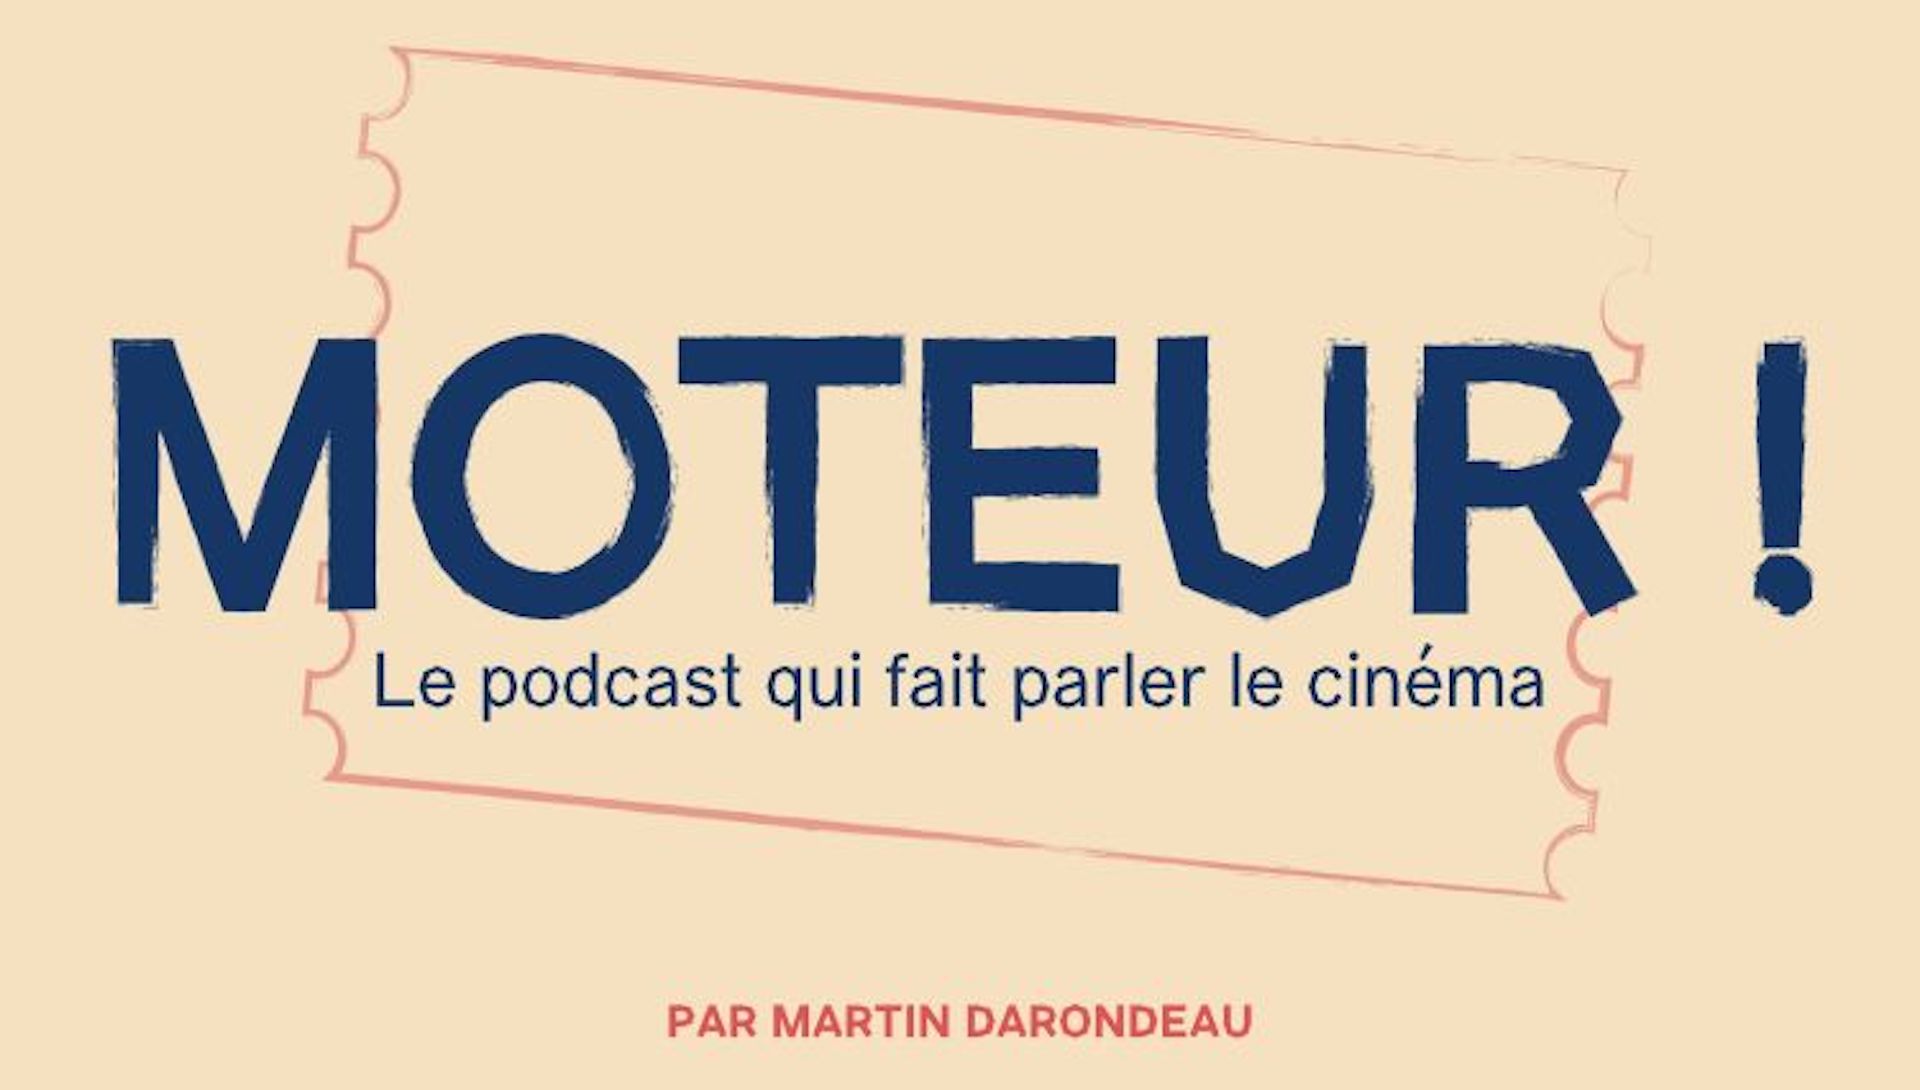 Le podcast Moteur !